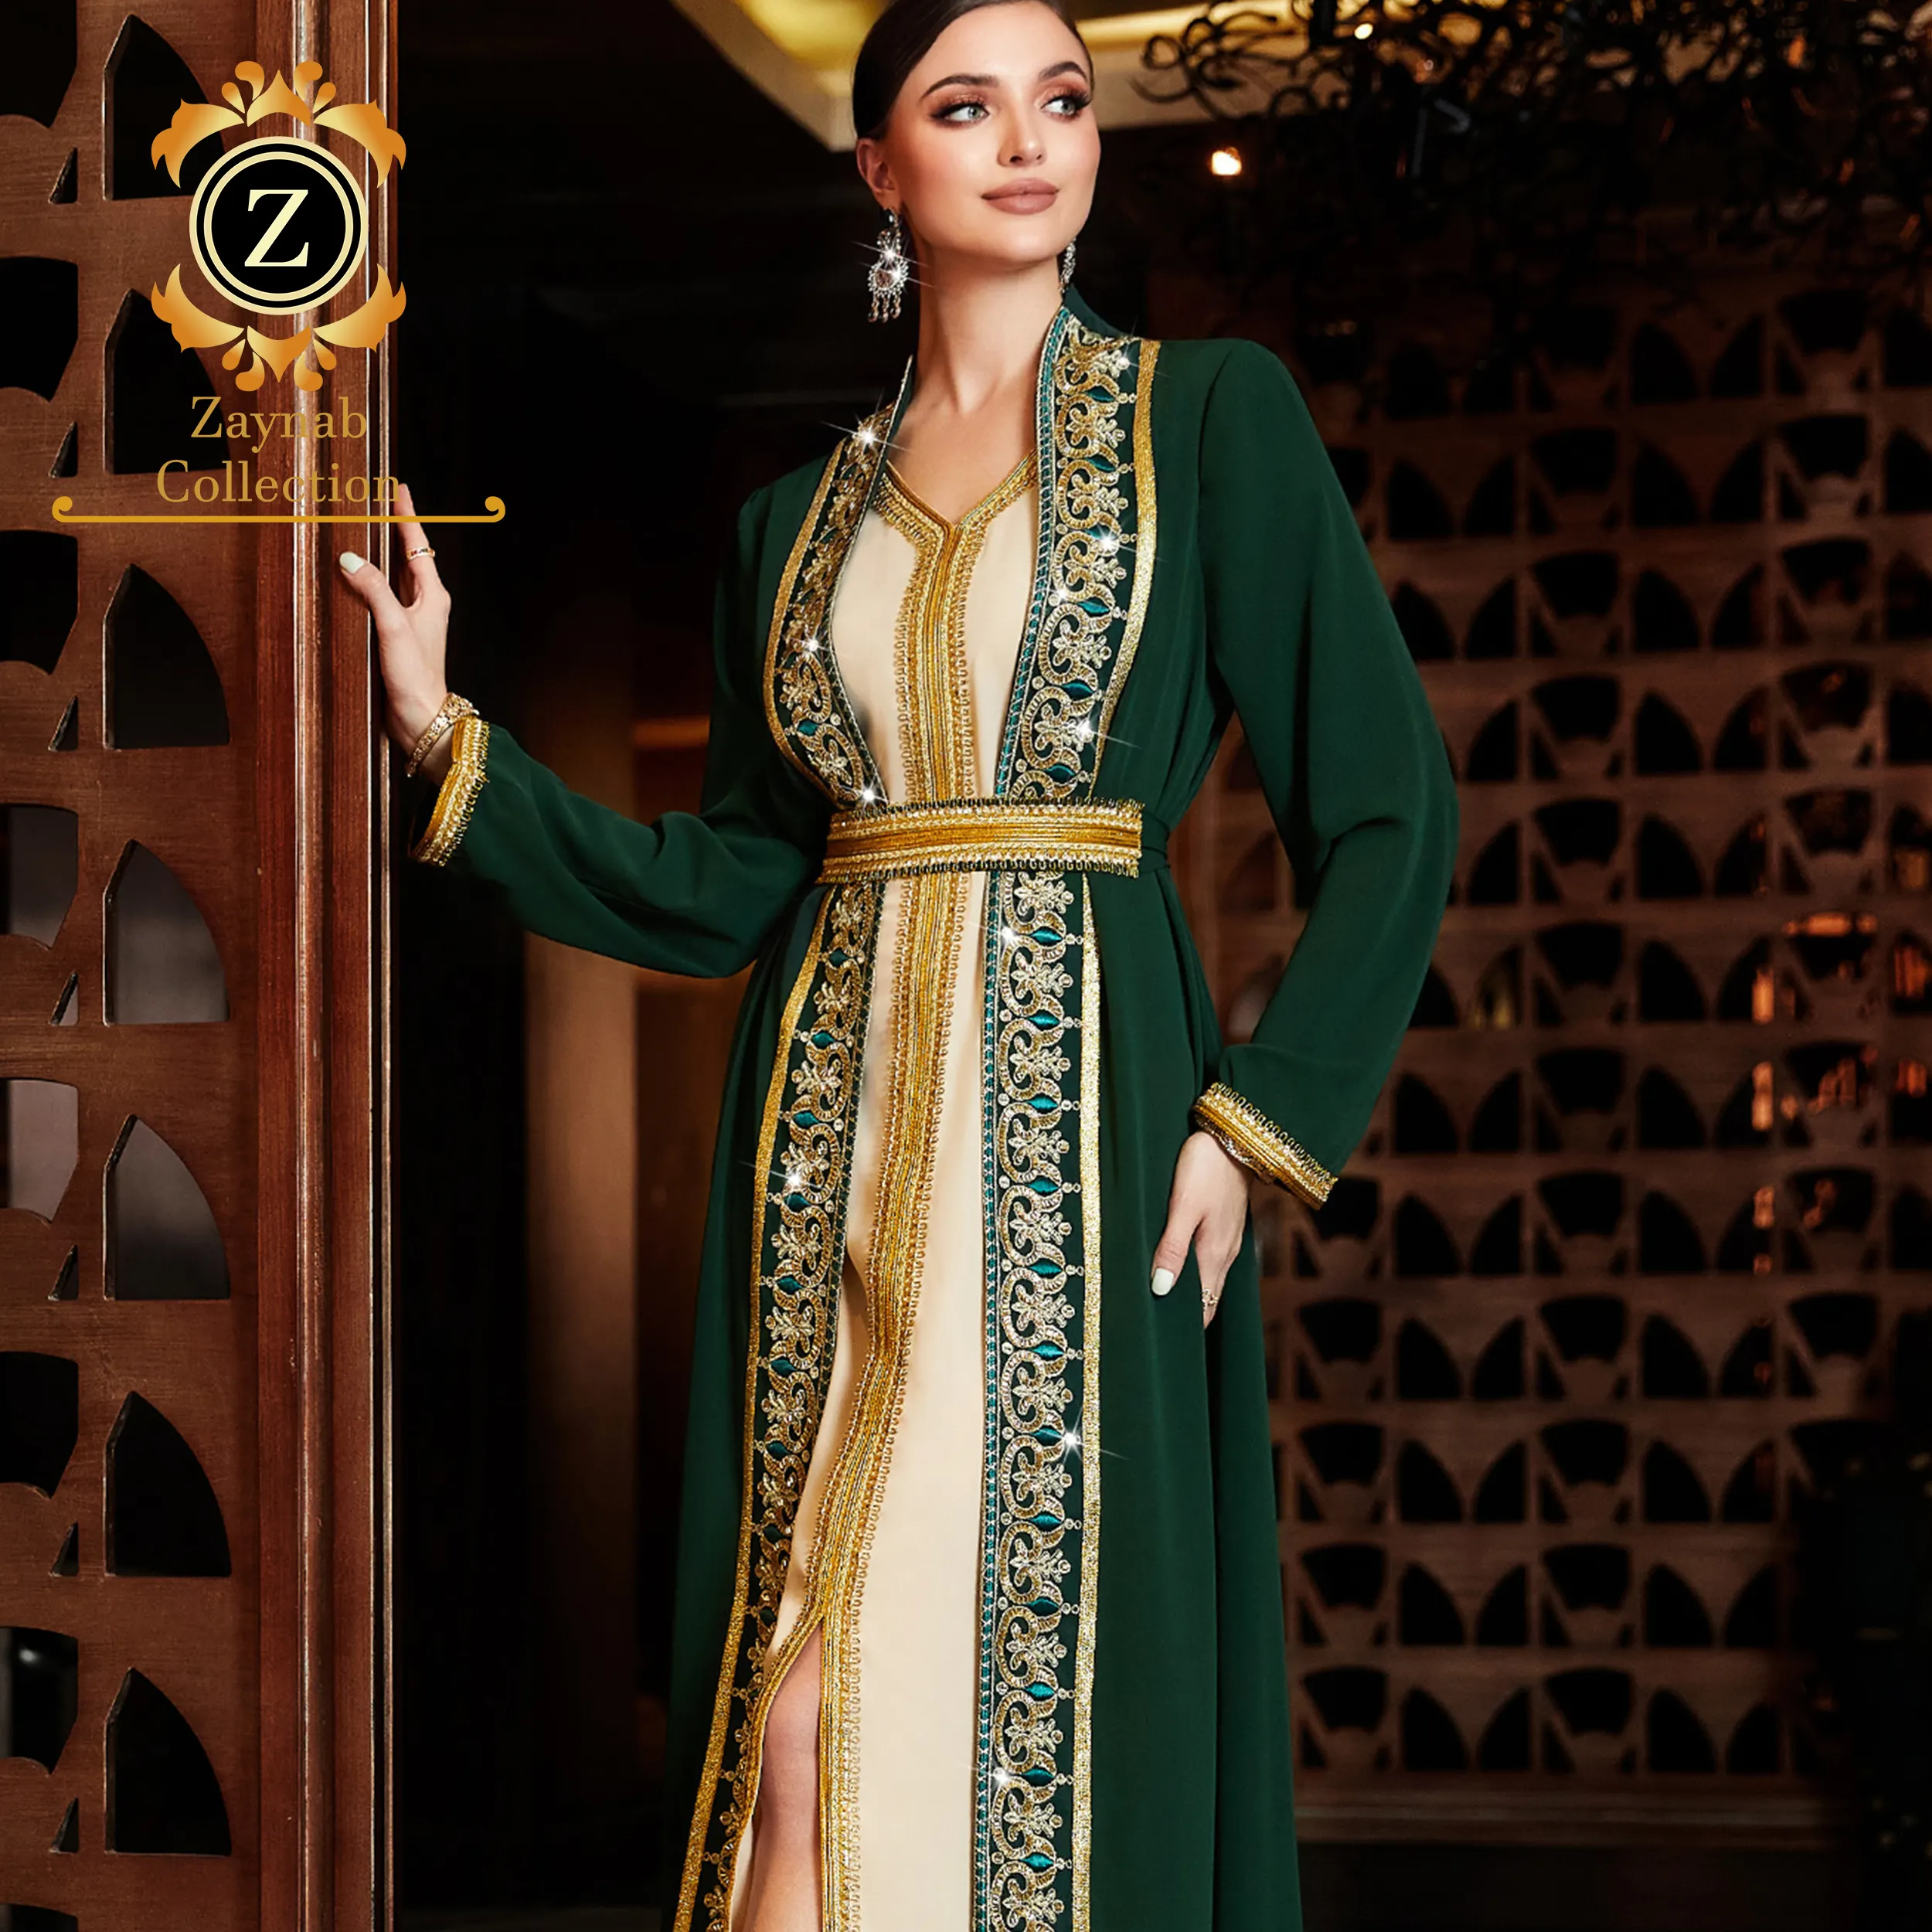 Zaynab Einfache Abaya Designs Pakistan Chiffon Abaya Muslimisches Hochzeits kleid Frauen Muslimisches Kleid Dubai Islamic Abaya